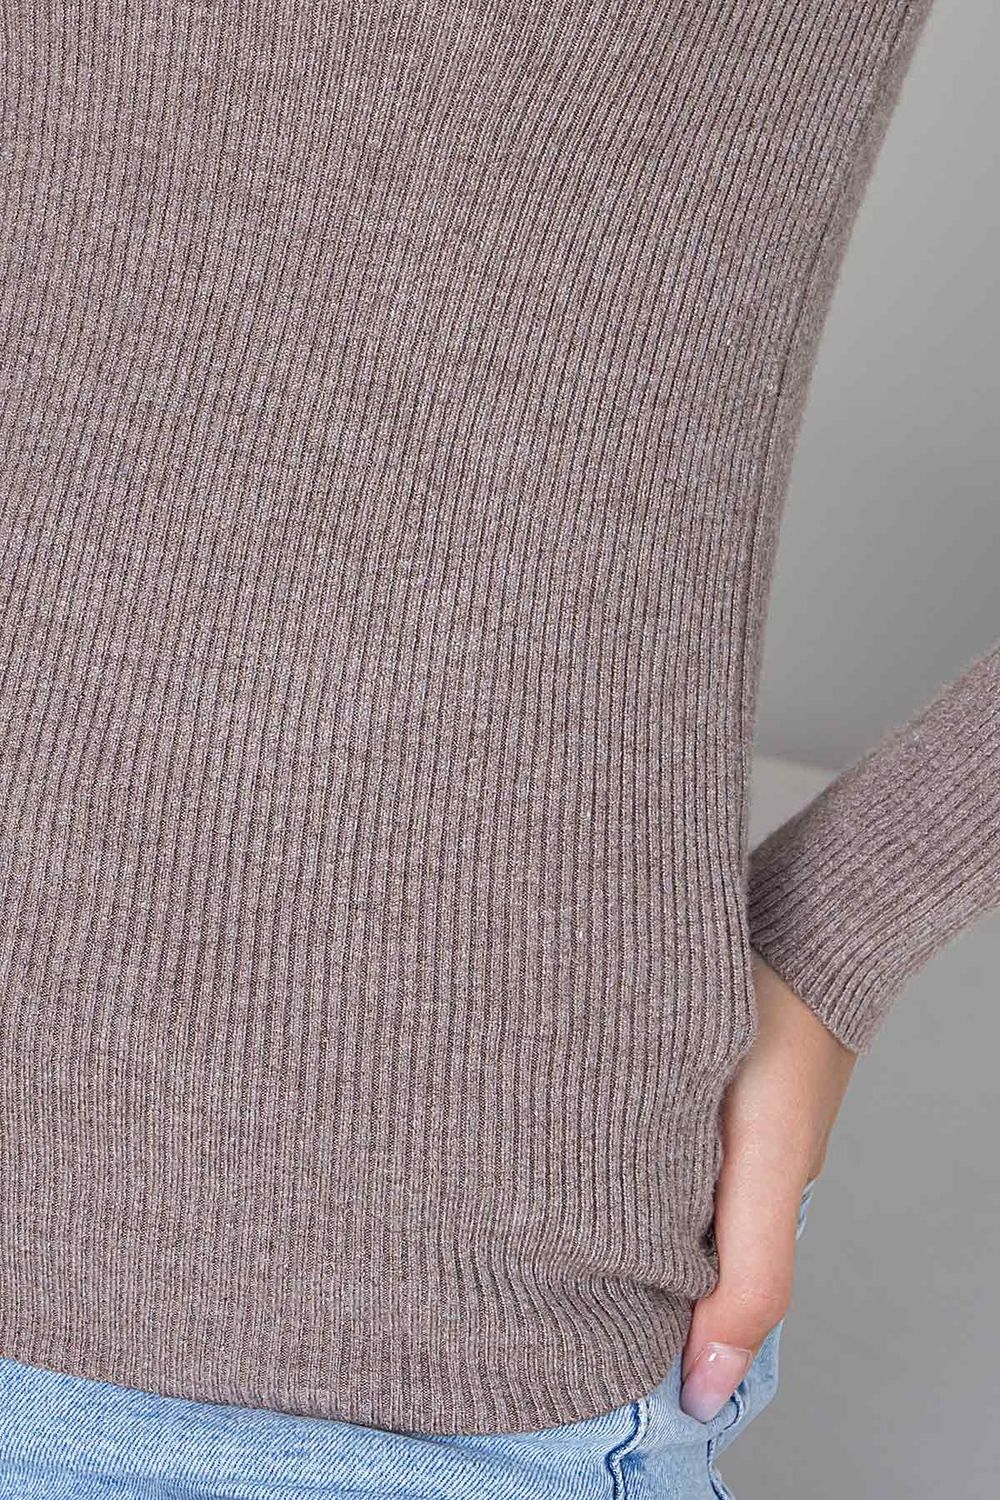 Жіноча базова кофточка джемпер кольору капучіно - фото